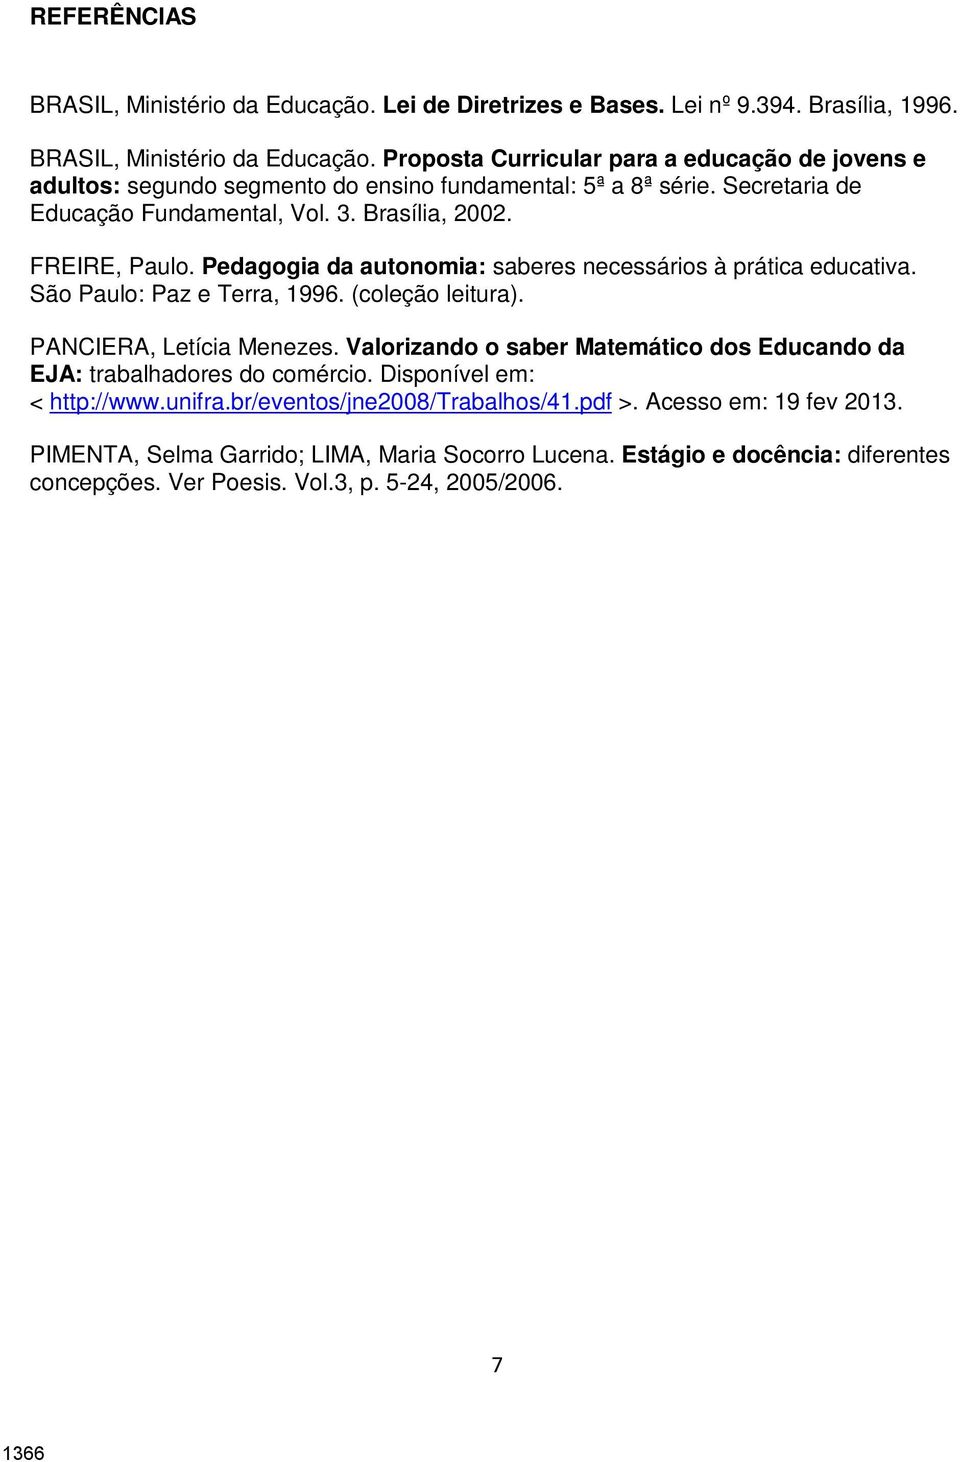 PANCIERA, Letícia Menezes. Valorizando o saber Matemático dos Educando da EJA: trabalhadores do comércio. Disponível em: < http://www.unifra.br/eventos/jne2008/trabalhos/41.pdf >.